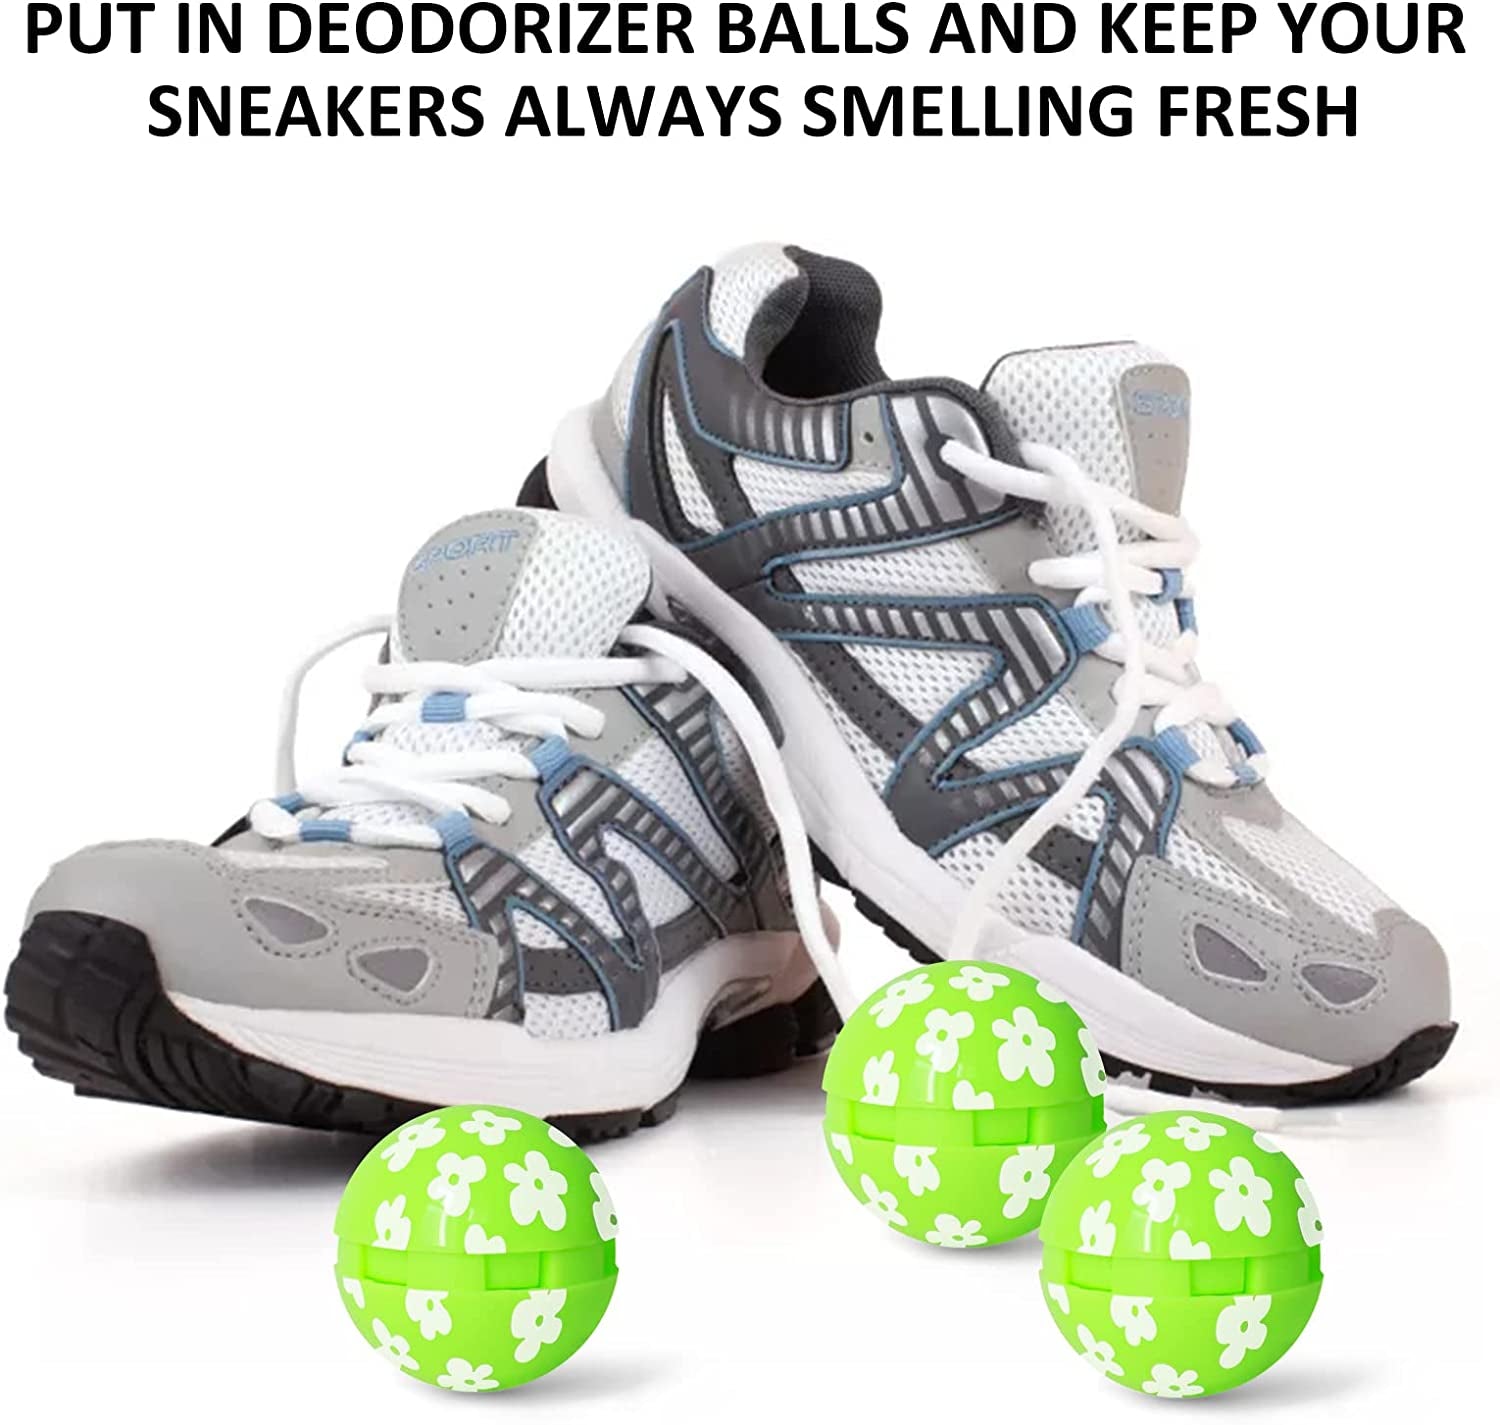 Sneaker Deodorizer Balls, Sneaker Odor Balls, Shoe Deodorizer for Sneakers Gym Bags Lockers Car, Fresh Jasmine Scent, 6 Pack